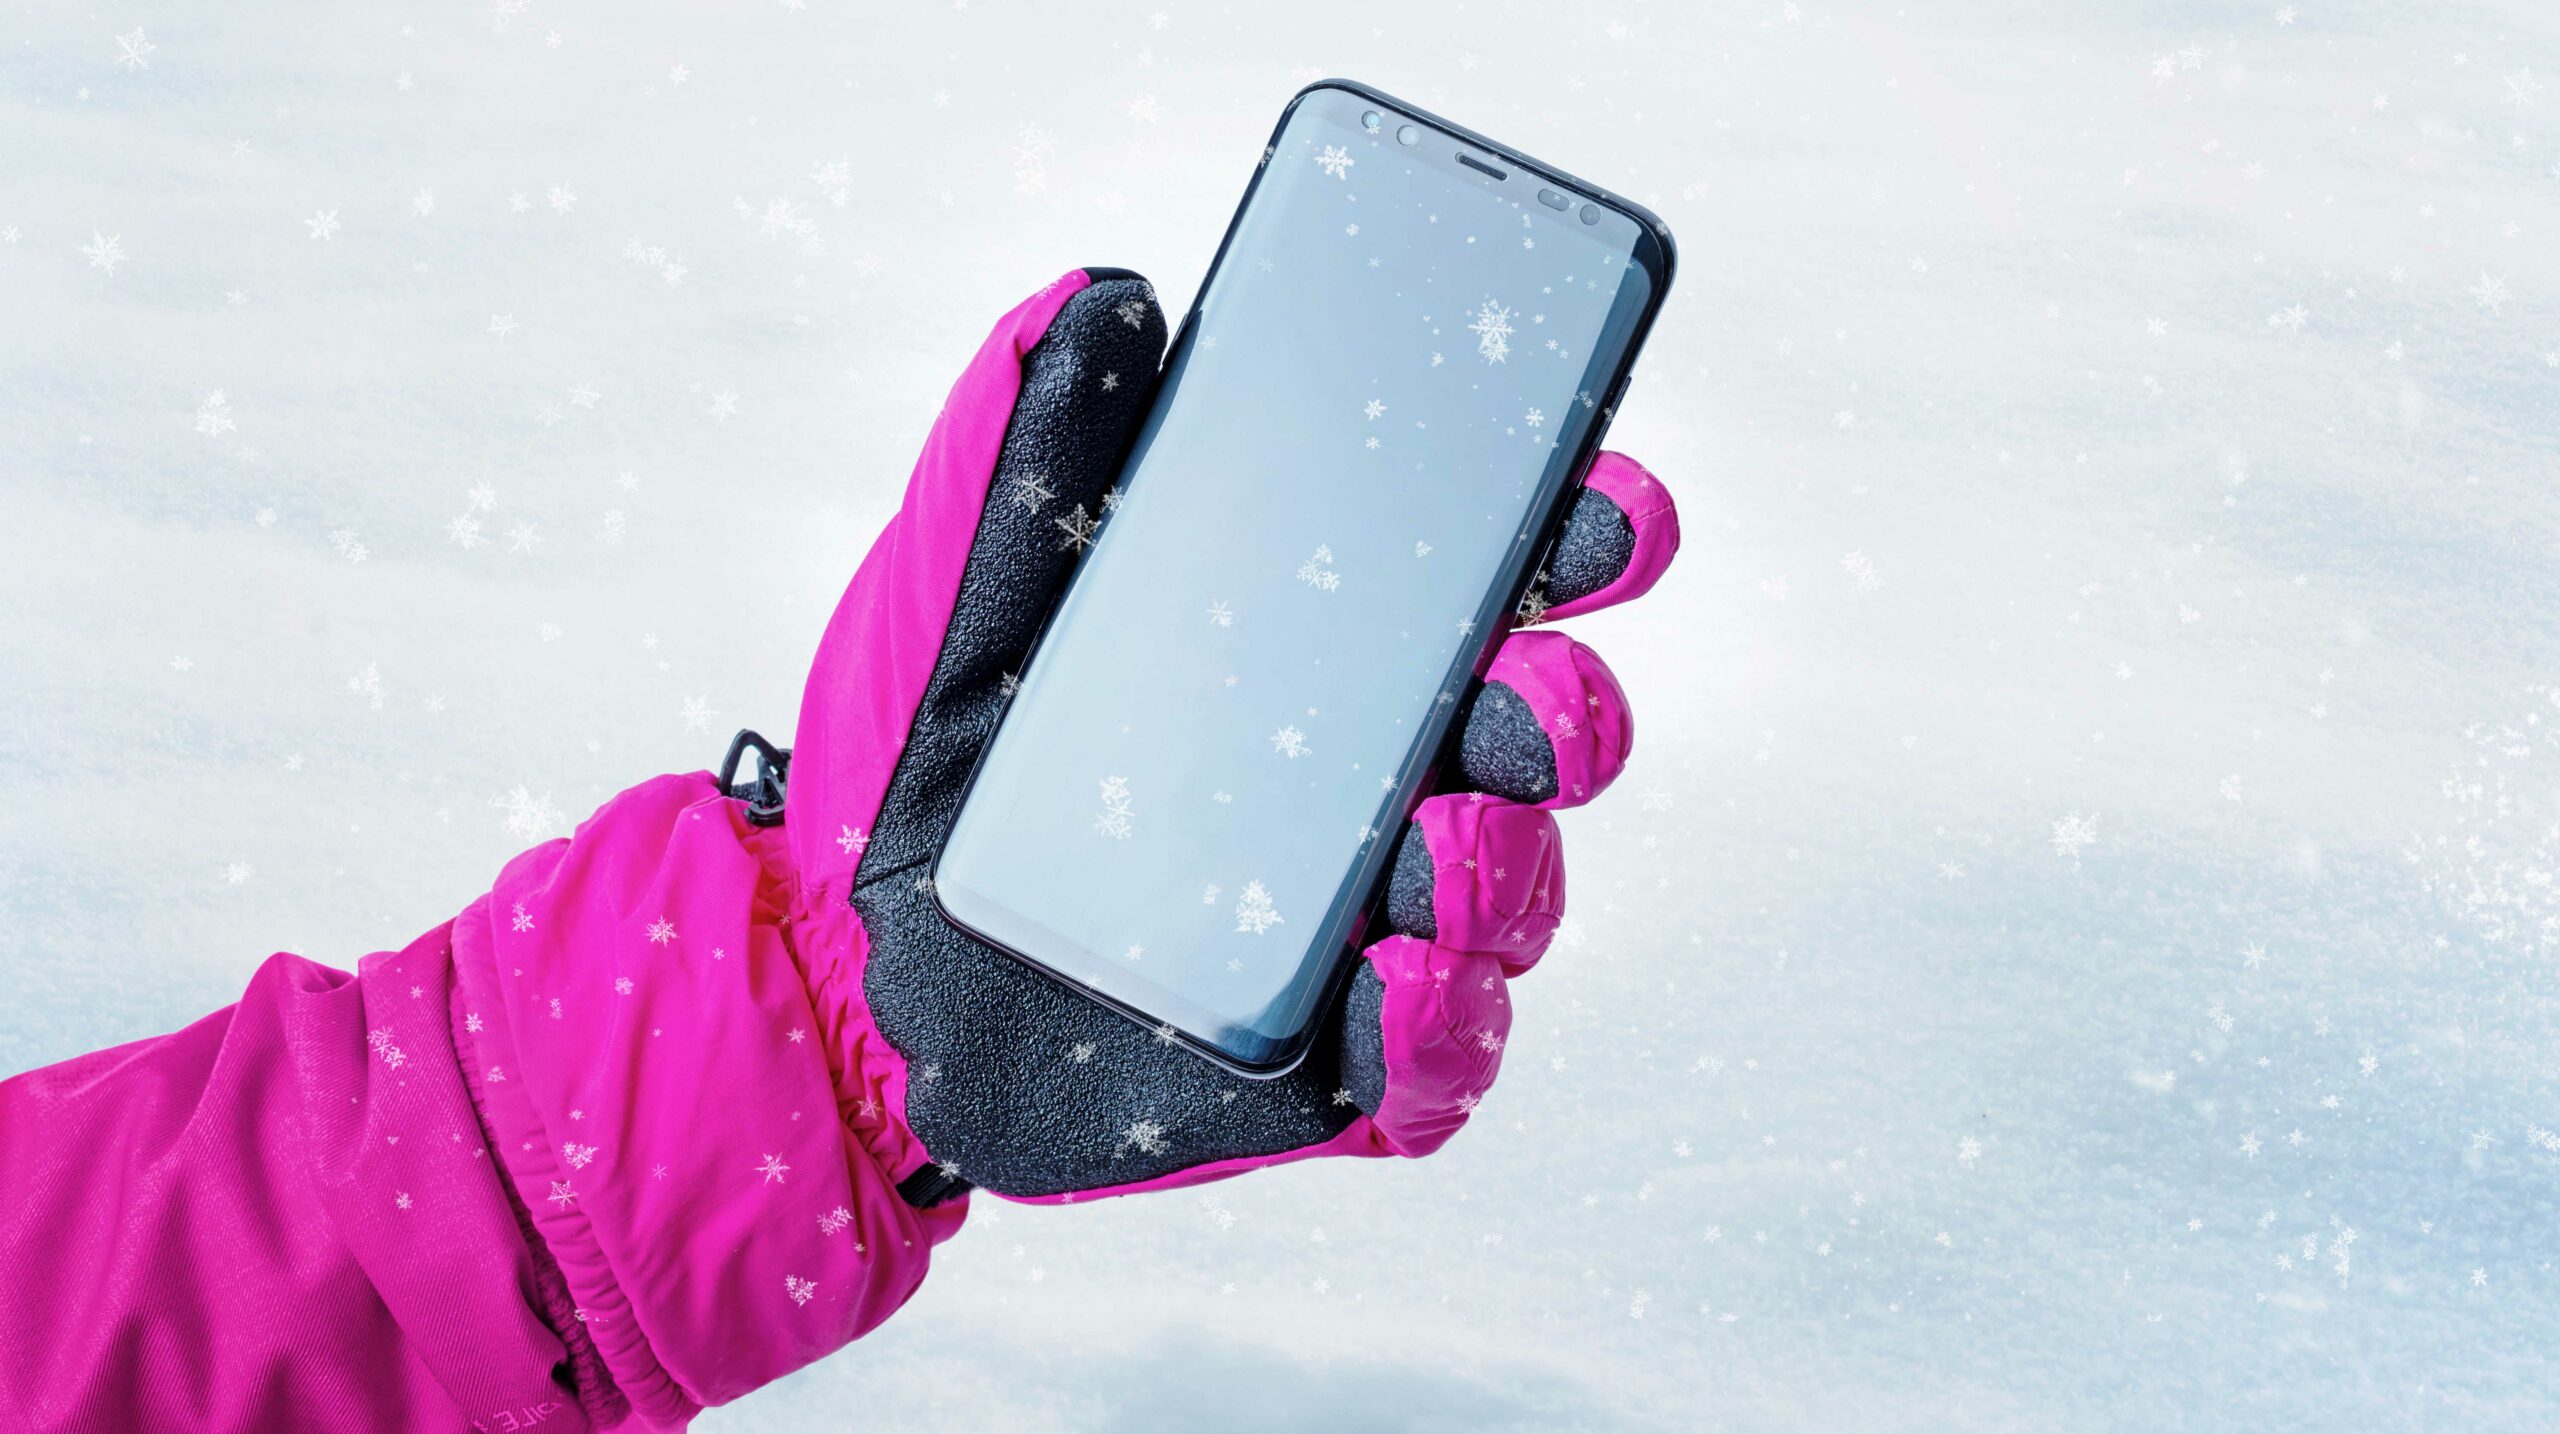 सर्दियों में भूलकर भी न करें ये गलतियाँ, हो सकता है आपका स्मार्टफोन खराब